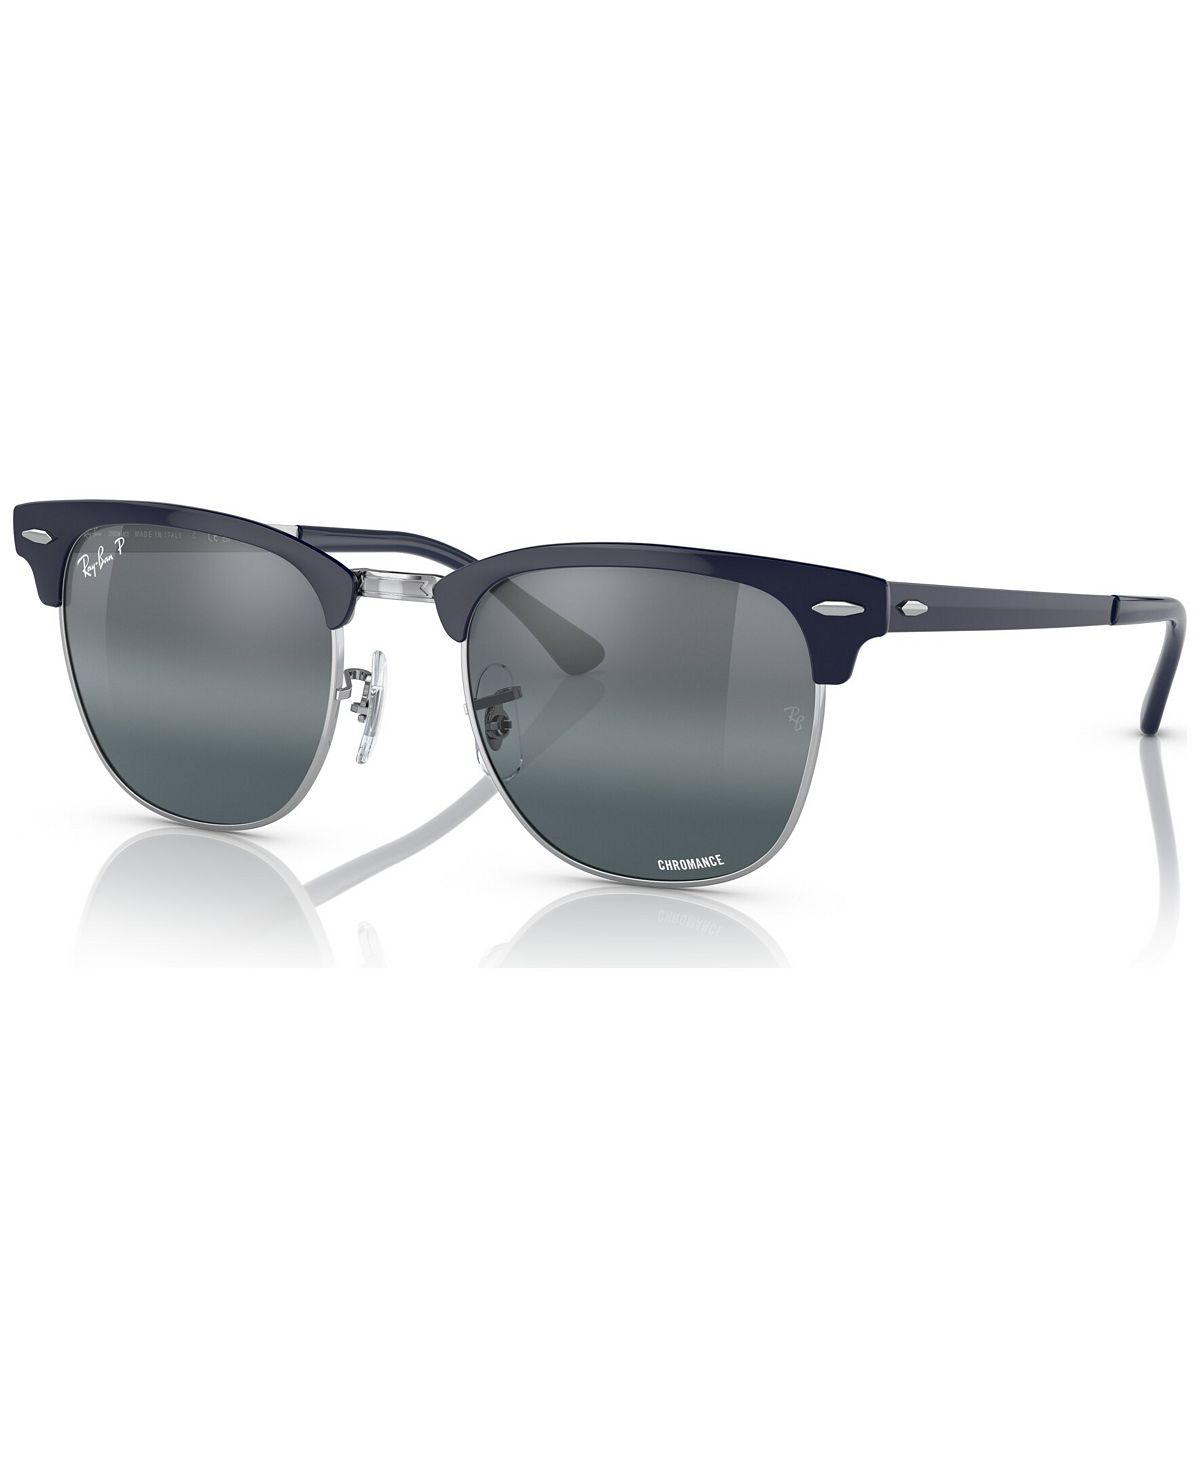 Поляризованные солнцезащитные очки унисекс, RB371651-ZP Ray-Ban